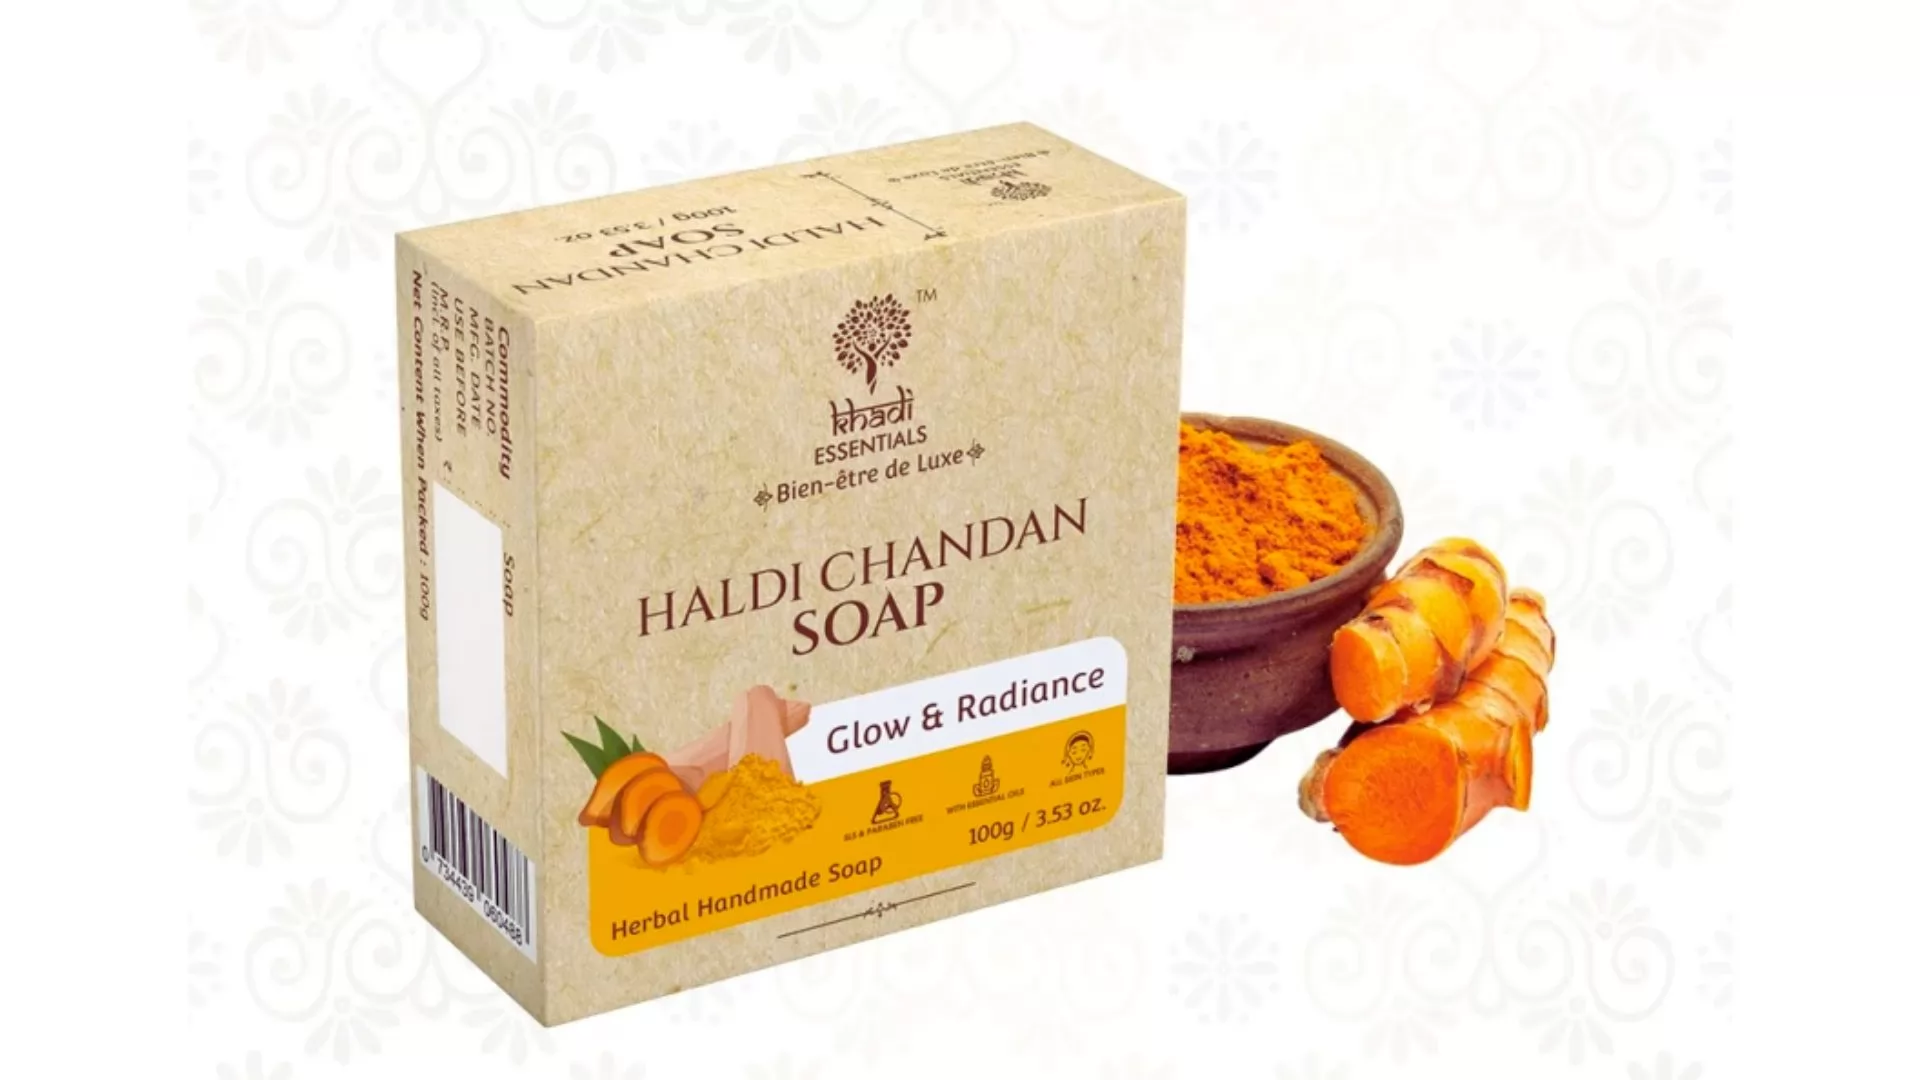 Khadi Essentials Haldi Chandan Herbal Handmade Soap